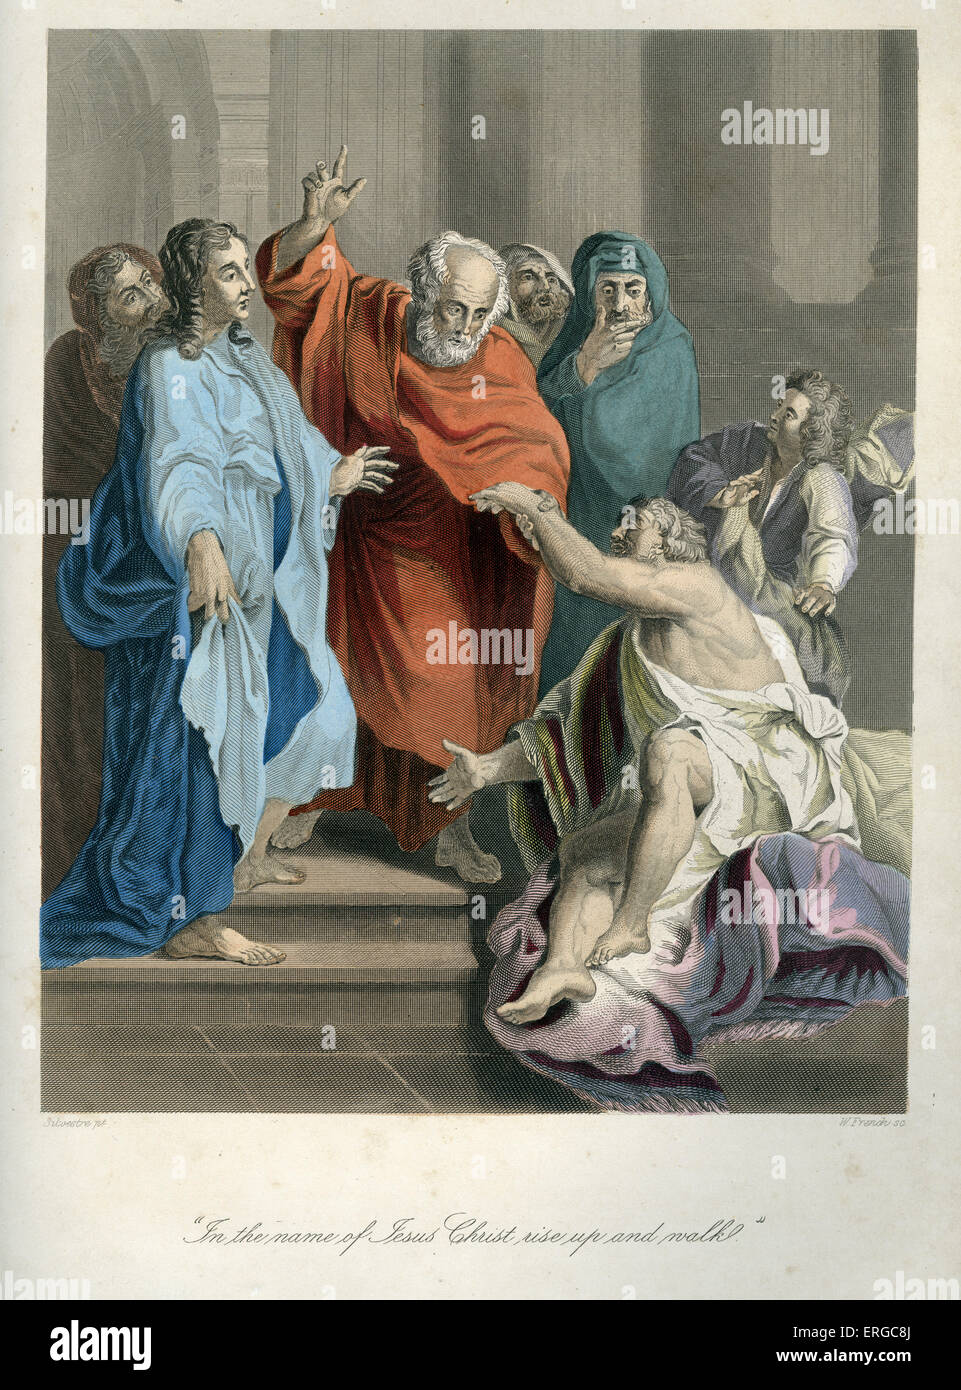 Wirkt der Petrus und Johannes, die Heilung von einem verkrüppelten Mann außerhalb des Tempels. Bildunterschrift lautet: "im Namen Jesu Christi, aufstehen Stockfoto